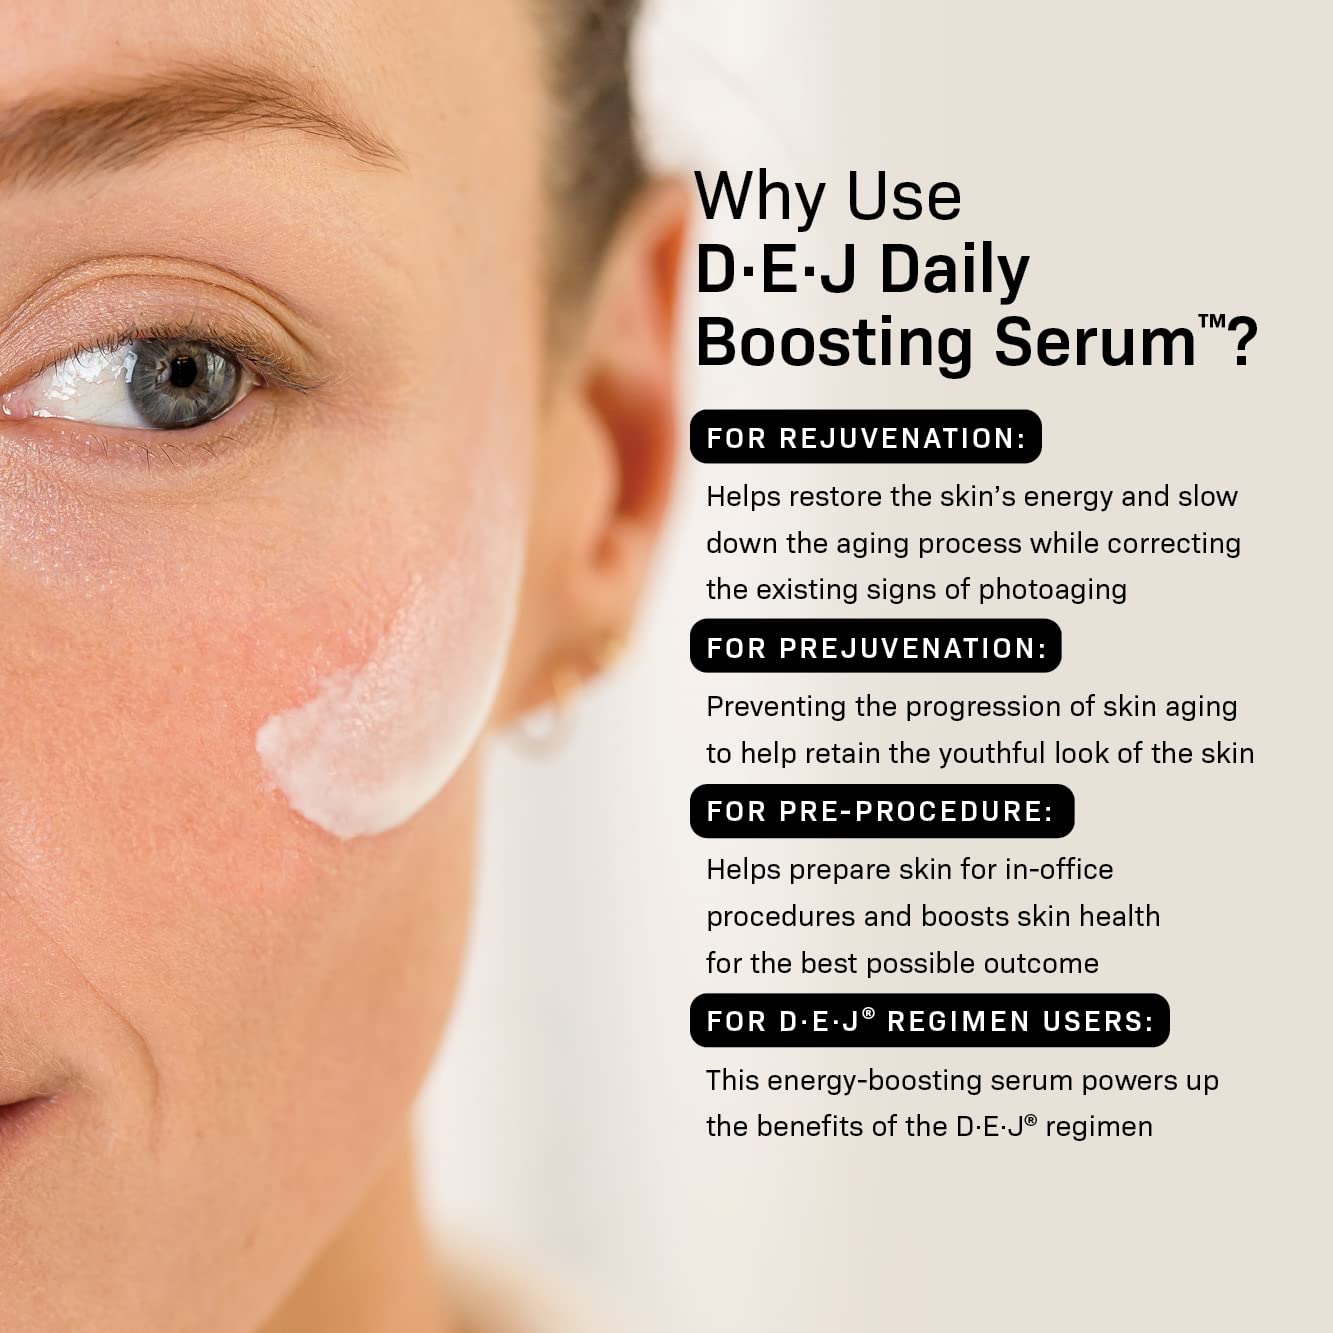 Revision Skincare D·E·J Daily Boosting Serum™ 1 fl oz